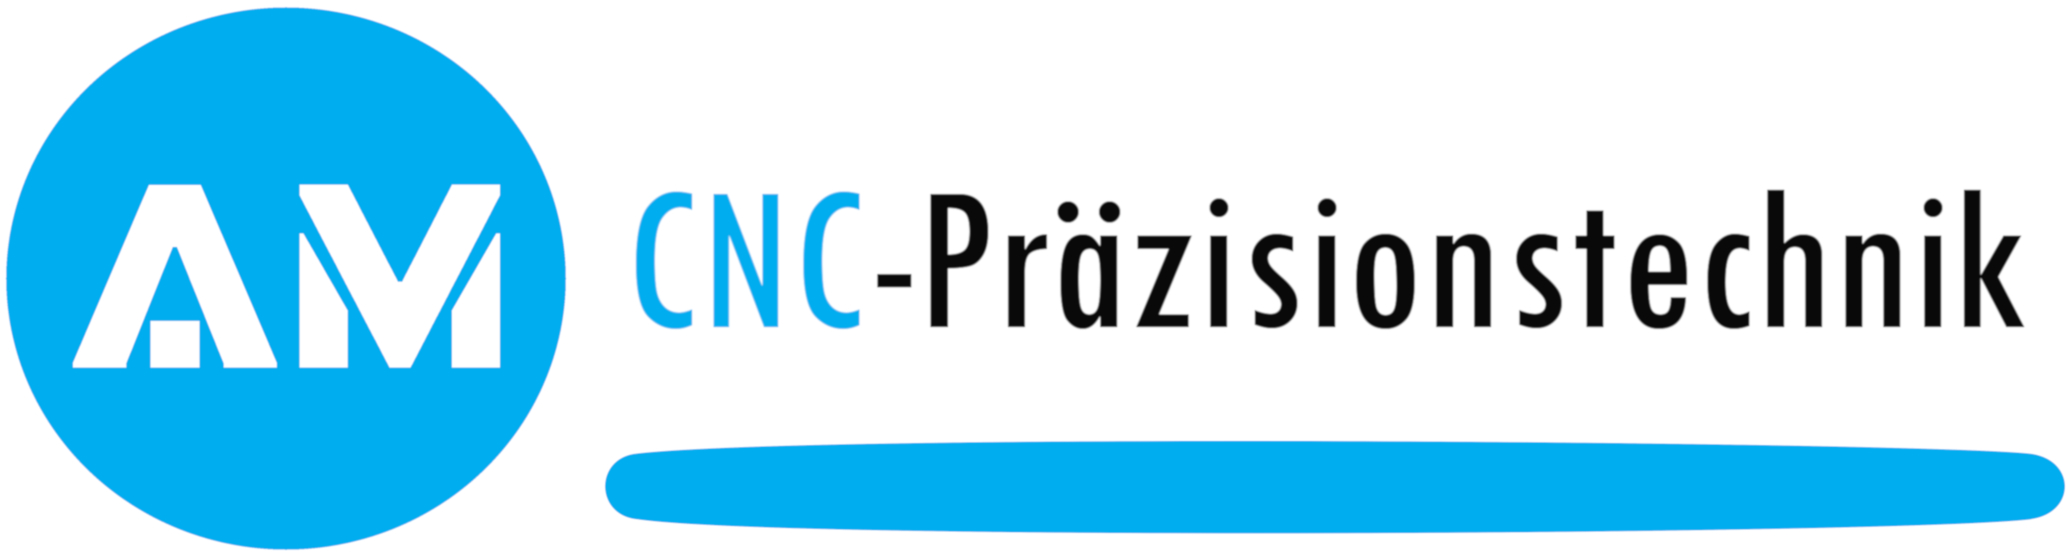 AM CNC Präzisionstechnik logo